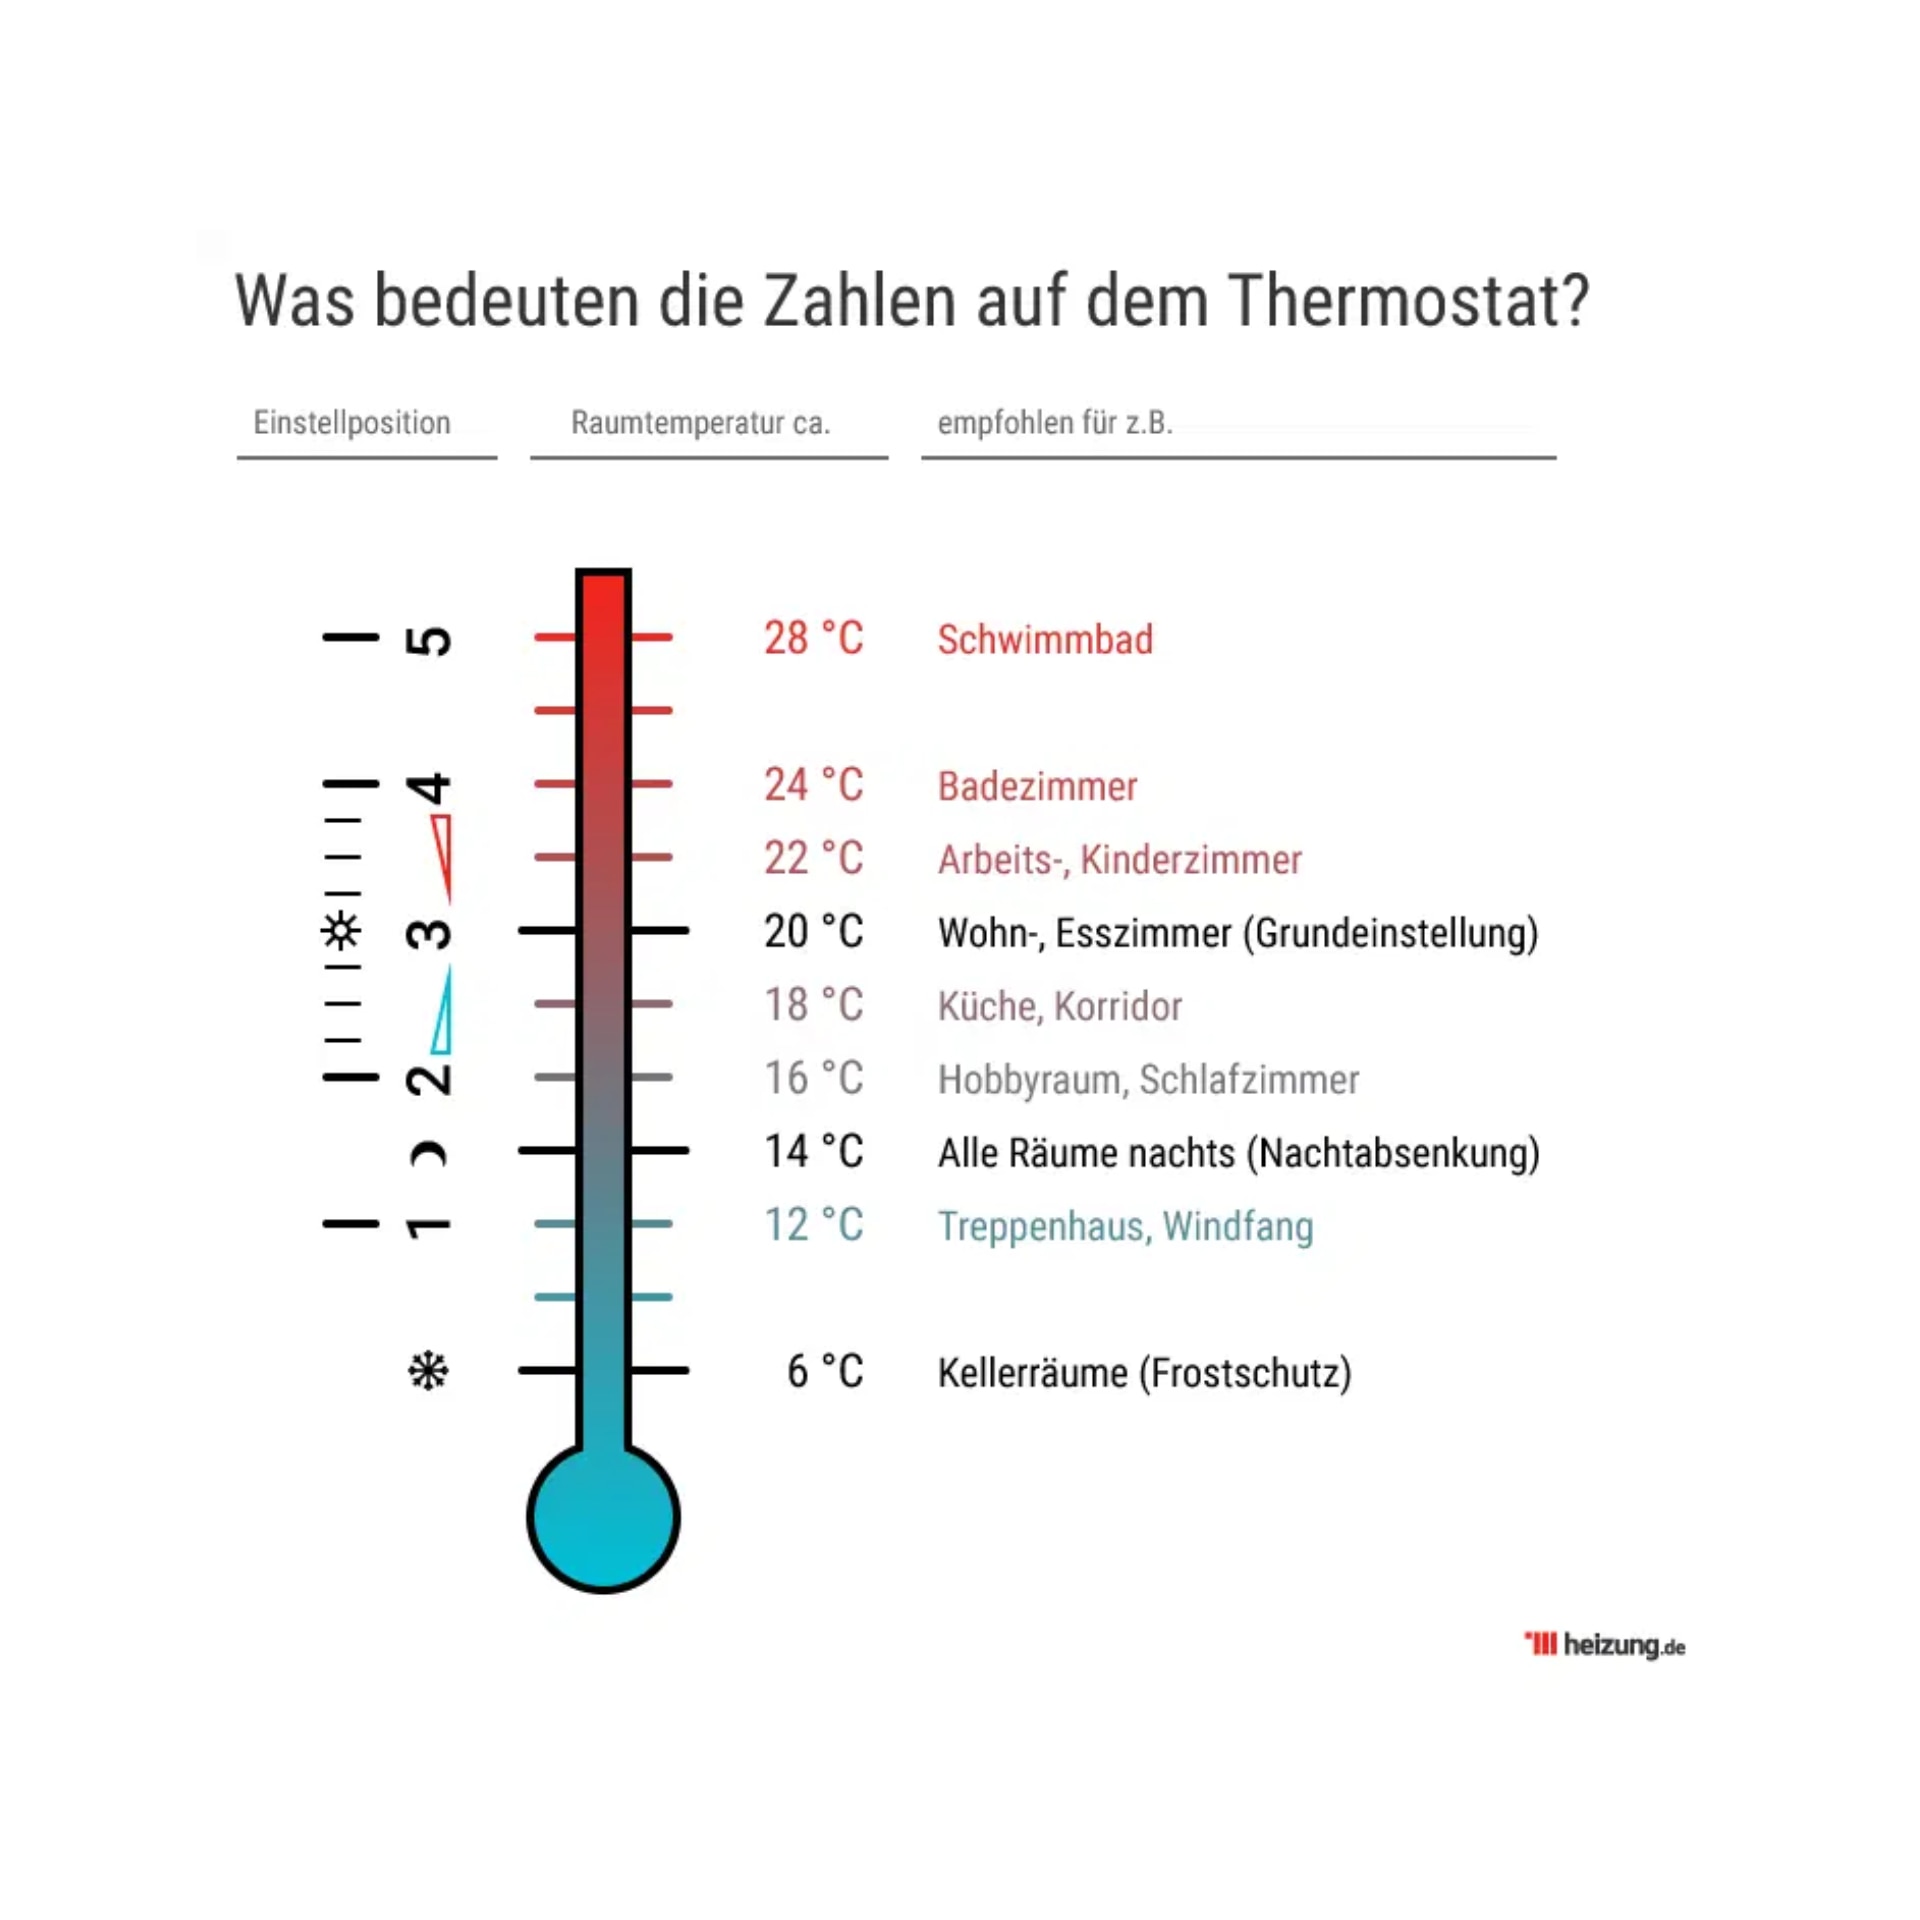 Thermostat - Seite 4 - Das Thermostat funktioniert r